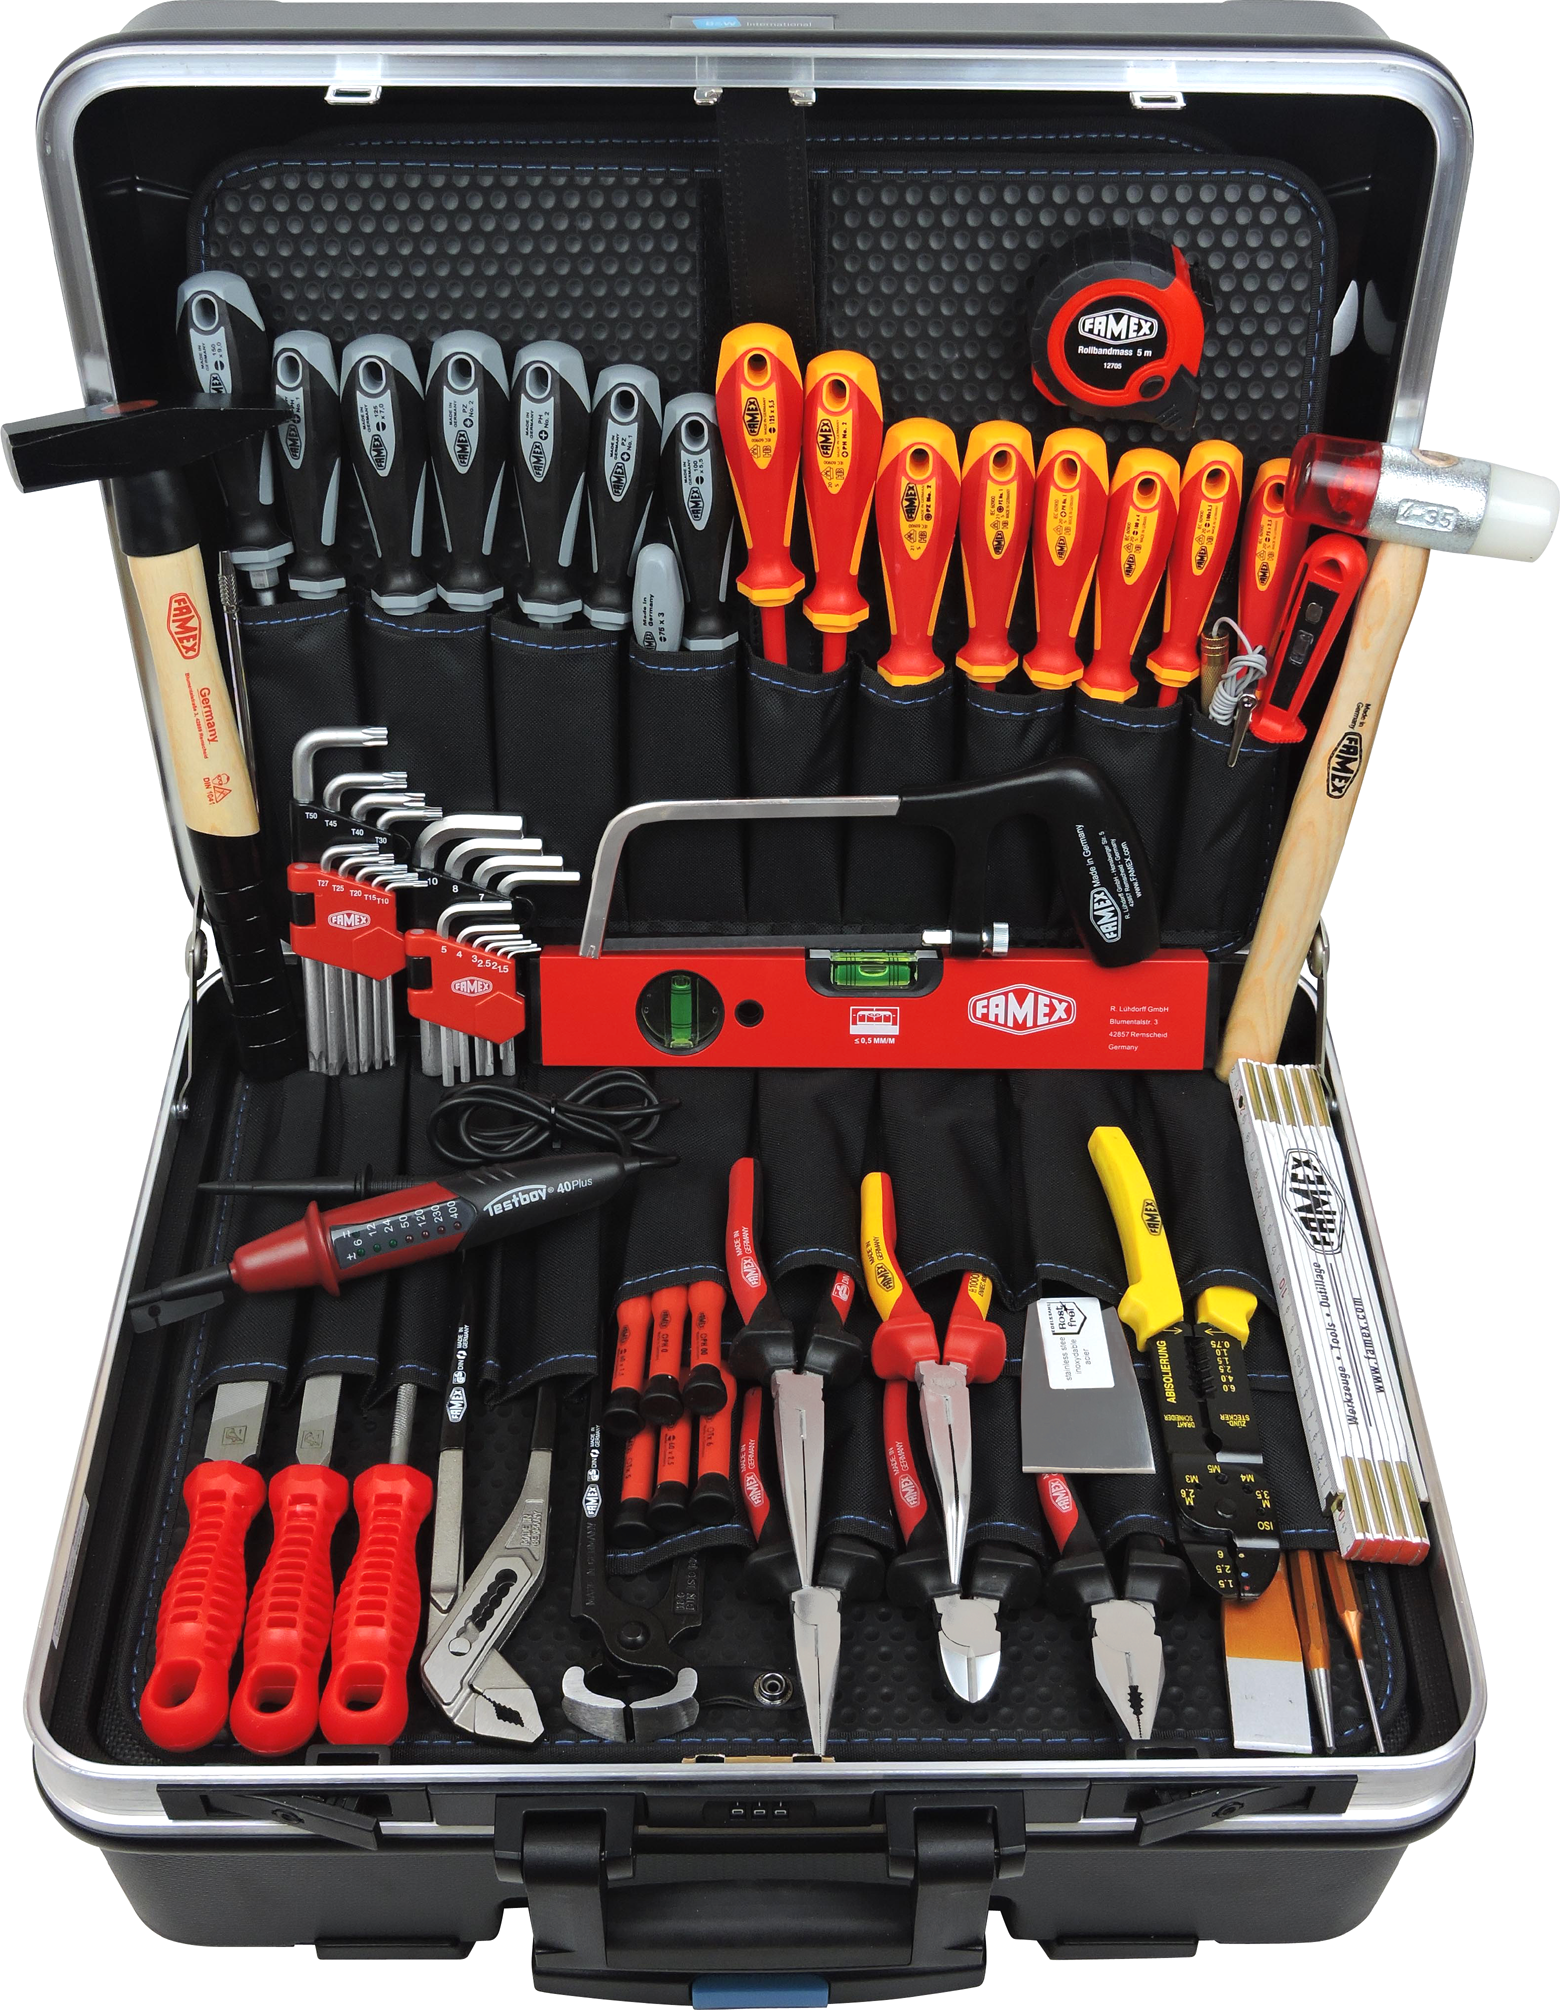 Werkzeuge günstig online kaufen - Profi Steckschlüsselsatz Werkzeug Werkzeugkoffer Set - mit und ABS in Schalenkoffer Trolley FAMEX 36L 604-18